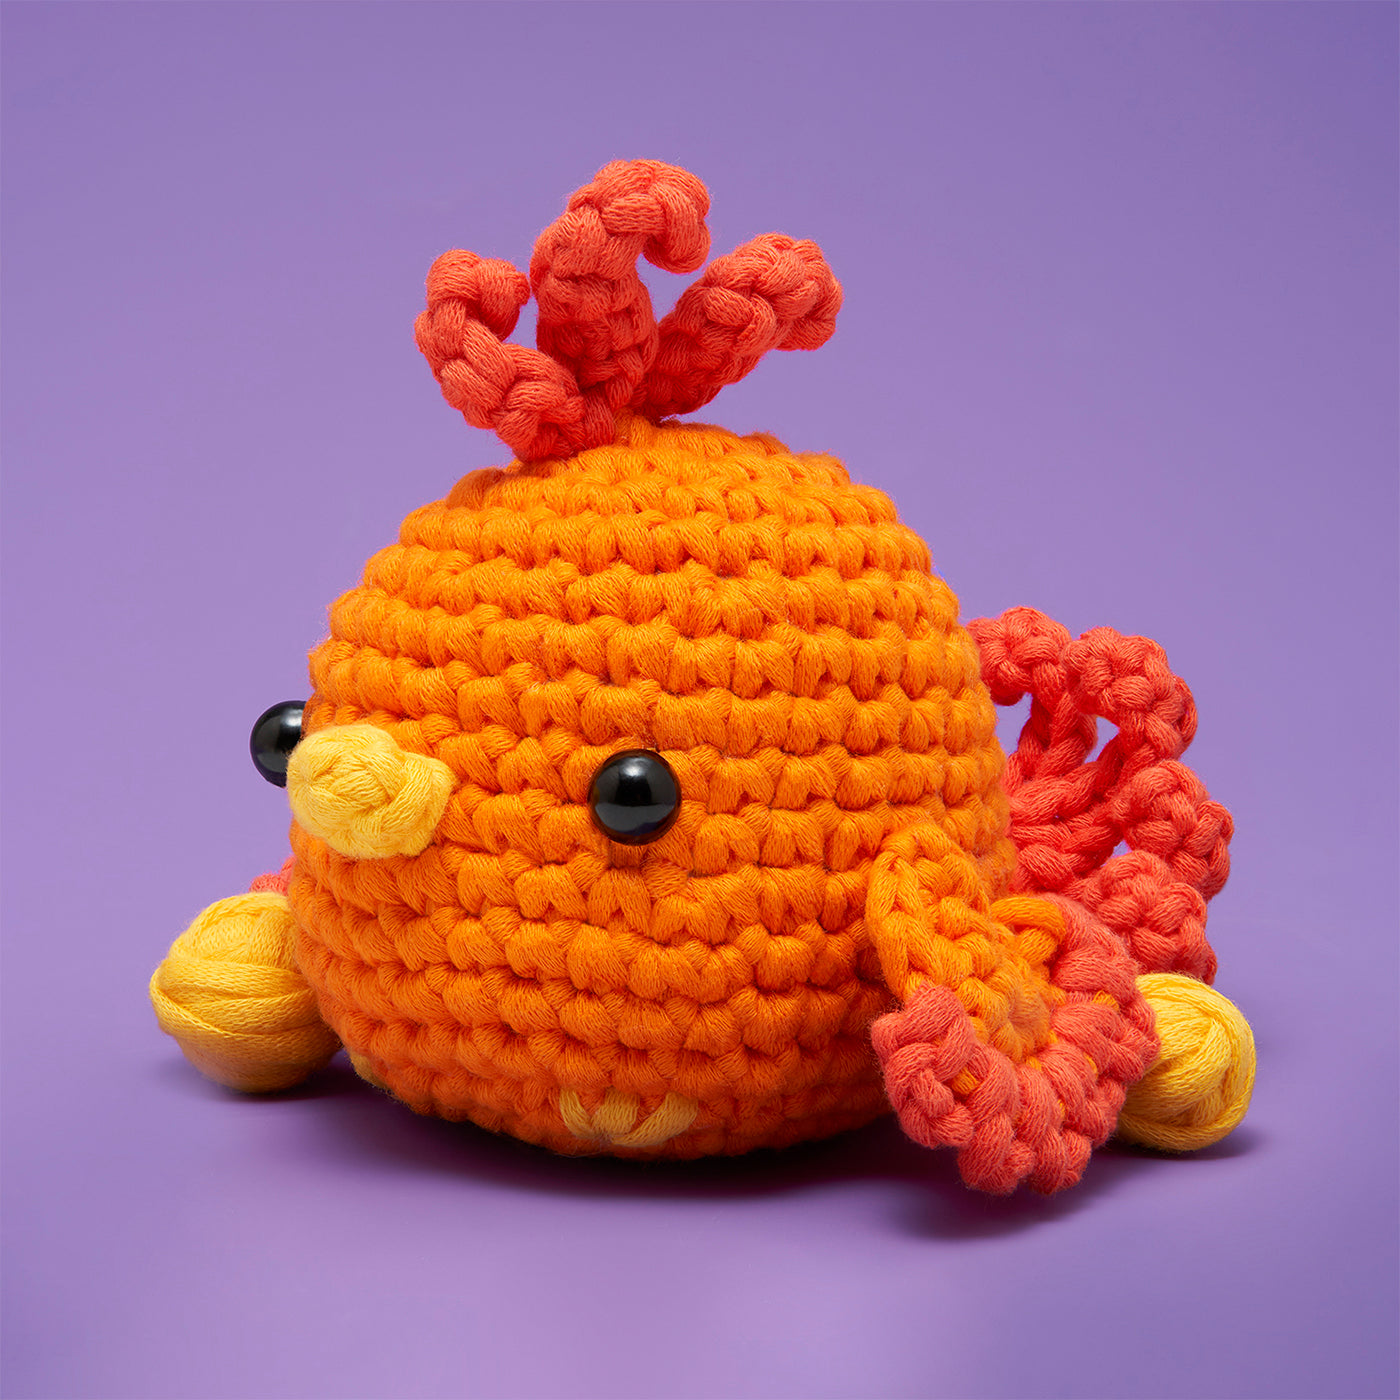 Beginners Crochet: The Woobles Beginner Accessories